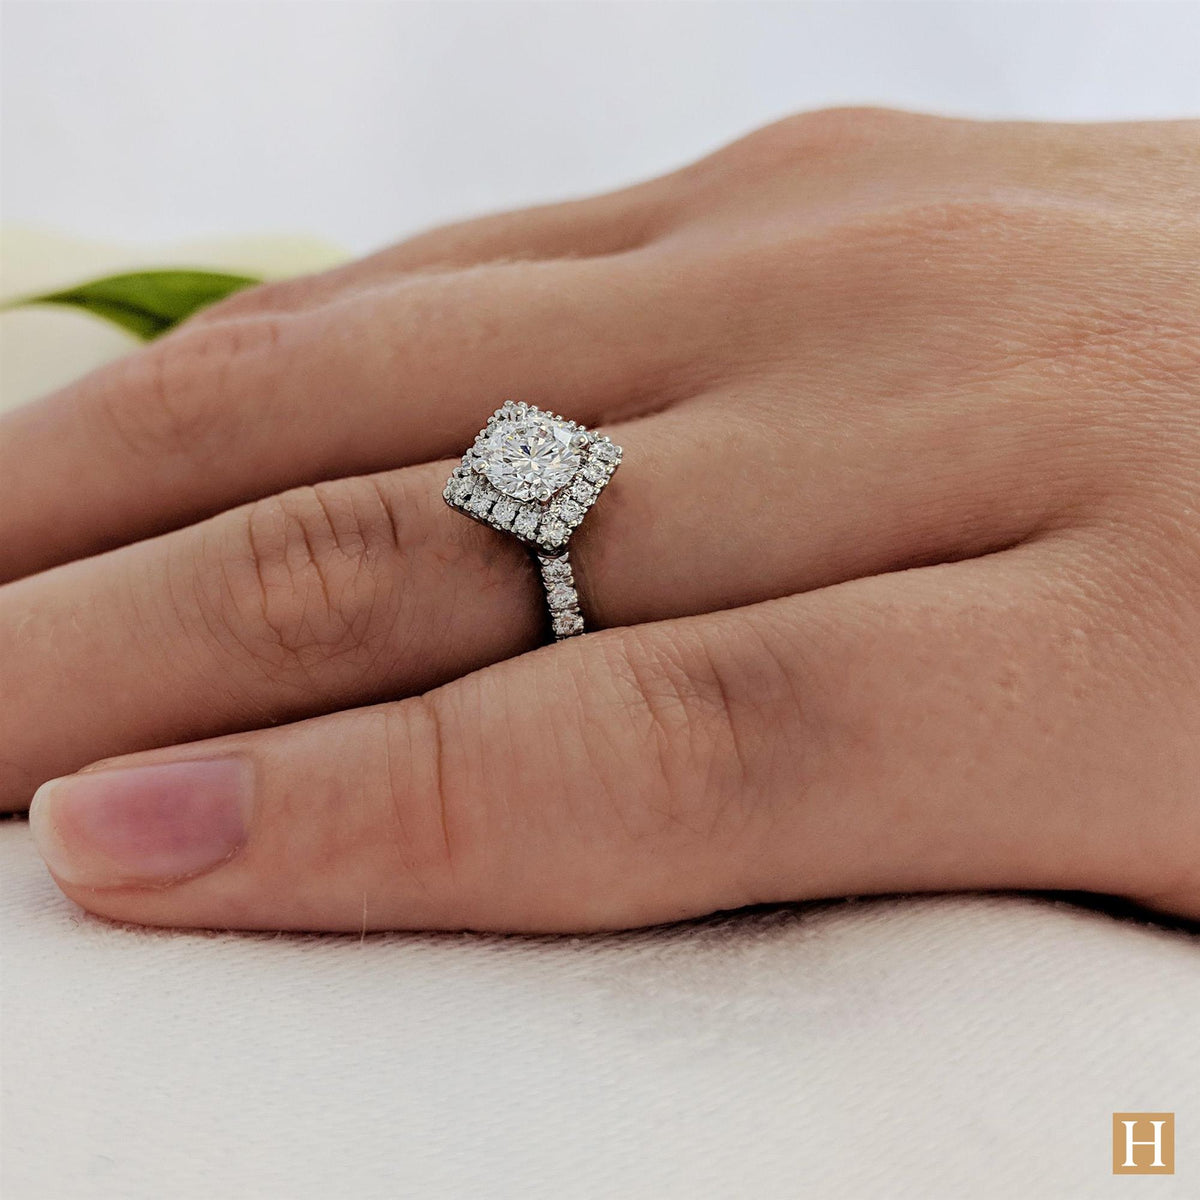 Platinum Inisheer Kite Engagement Ring